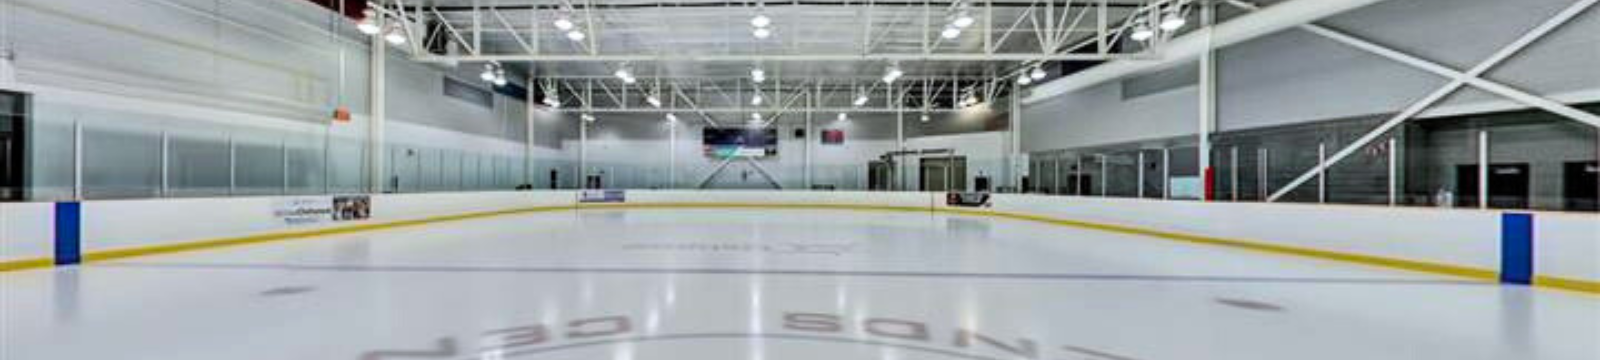 Delpark Homes Centre Arena